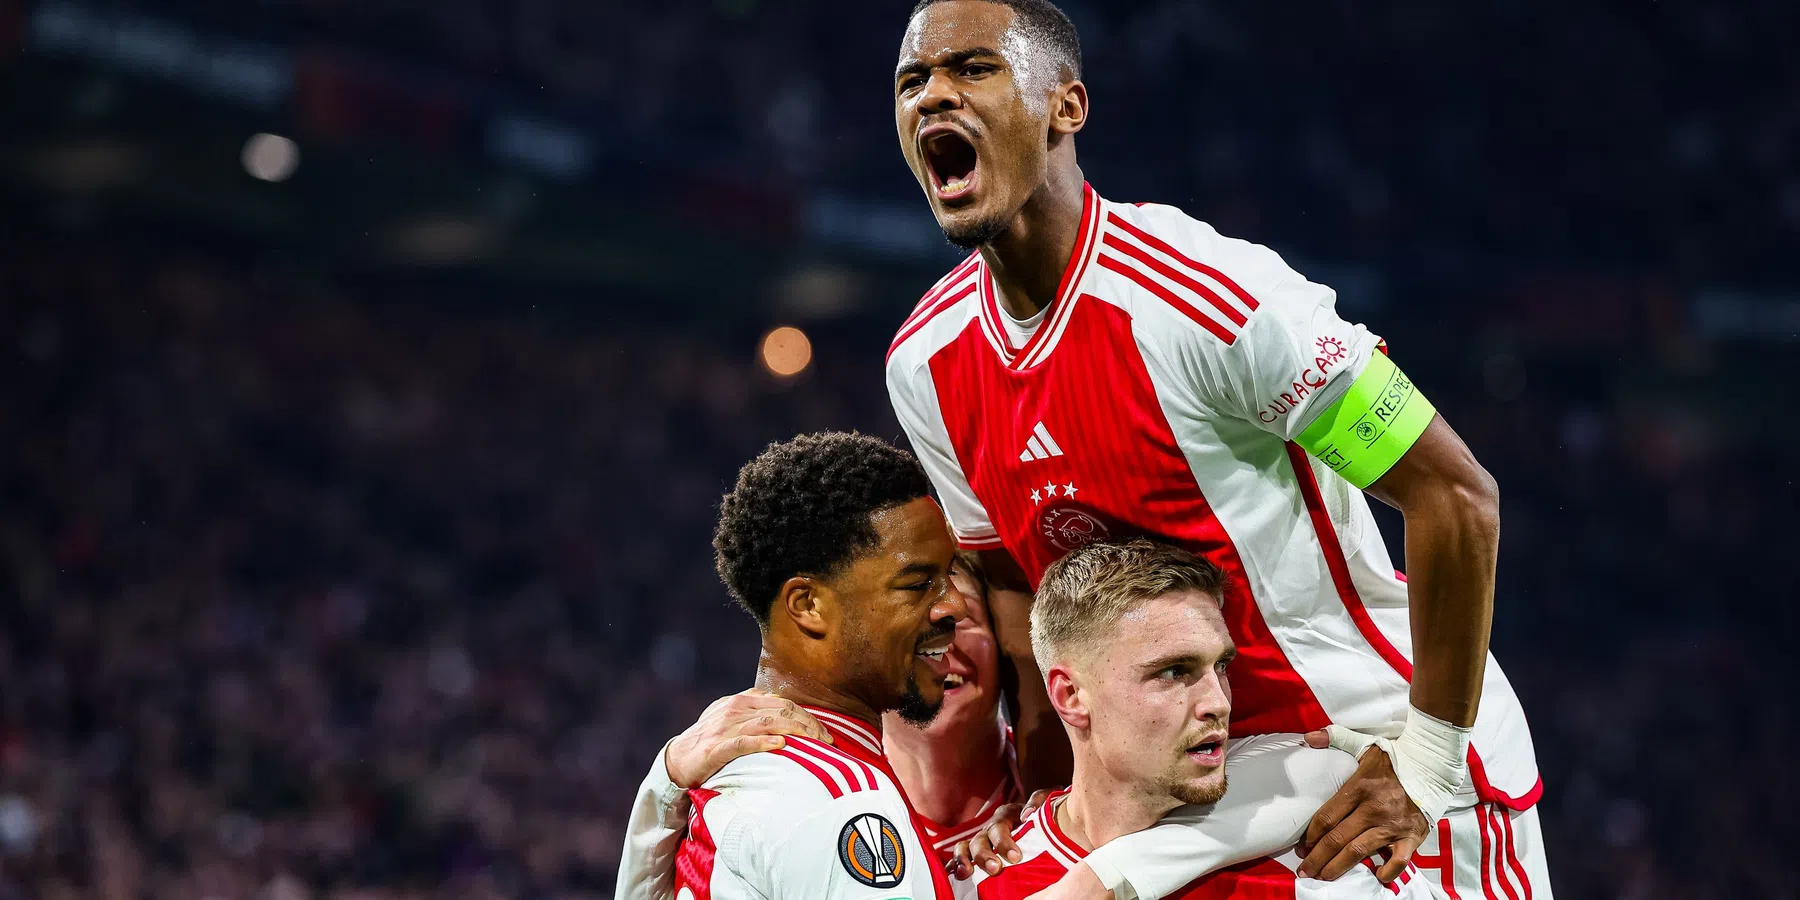 Ajax rekent af met AEK en overwintert in Europa